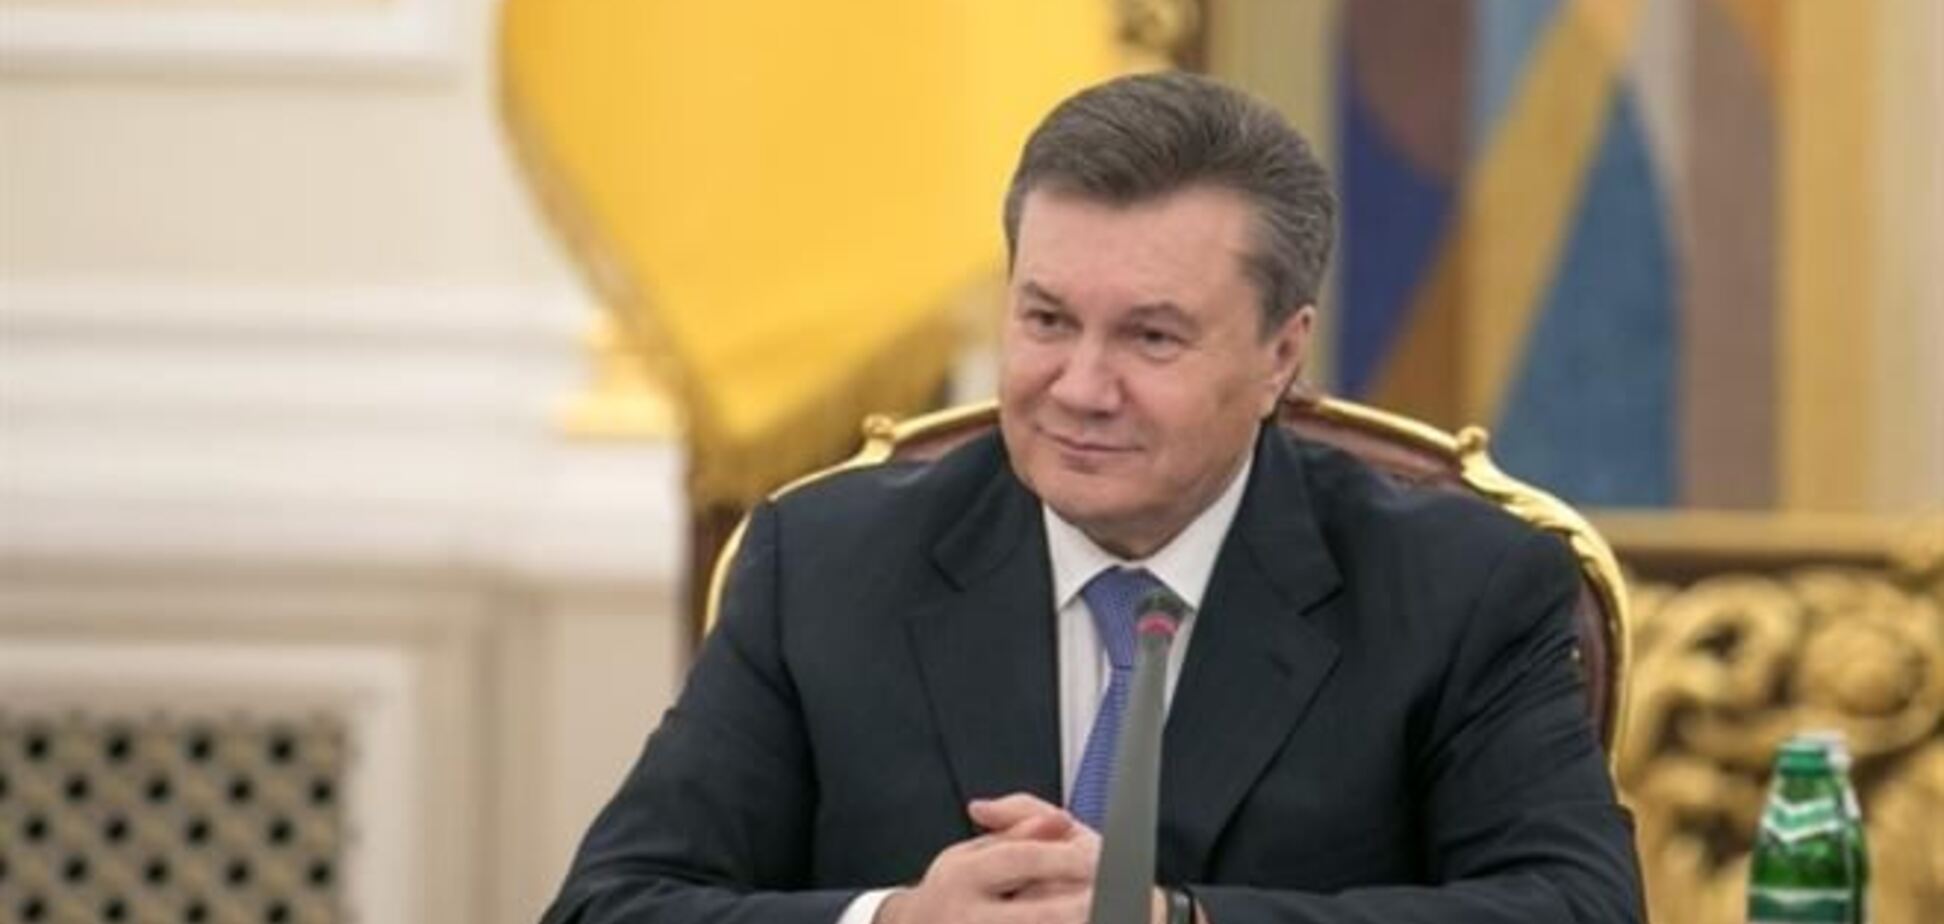 В СМИ попала копия соглашения по урегулированию кризиса, над которым раздумывает Янукович